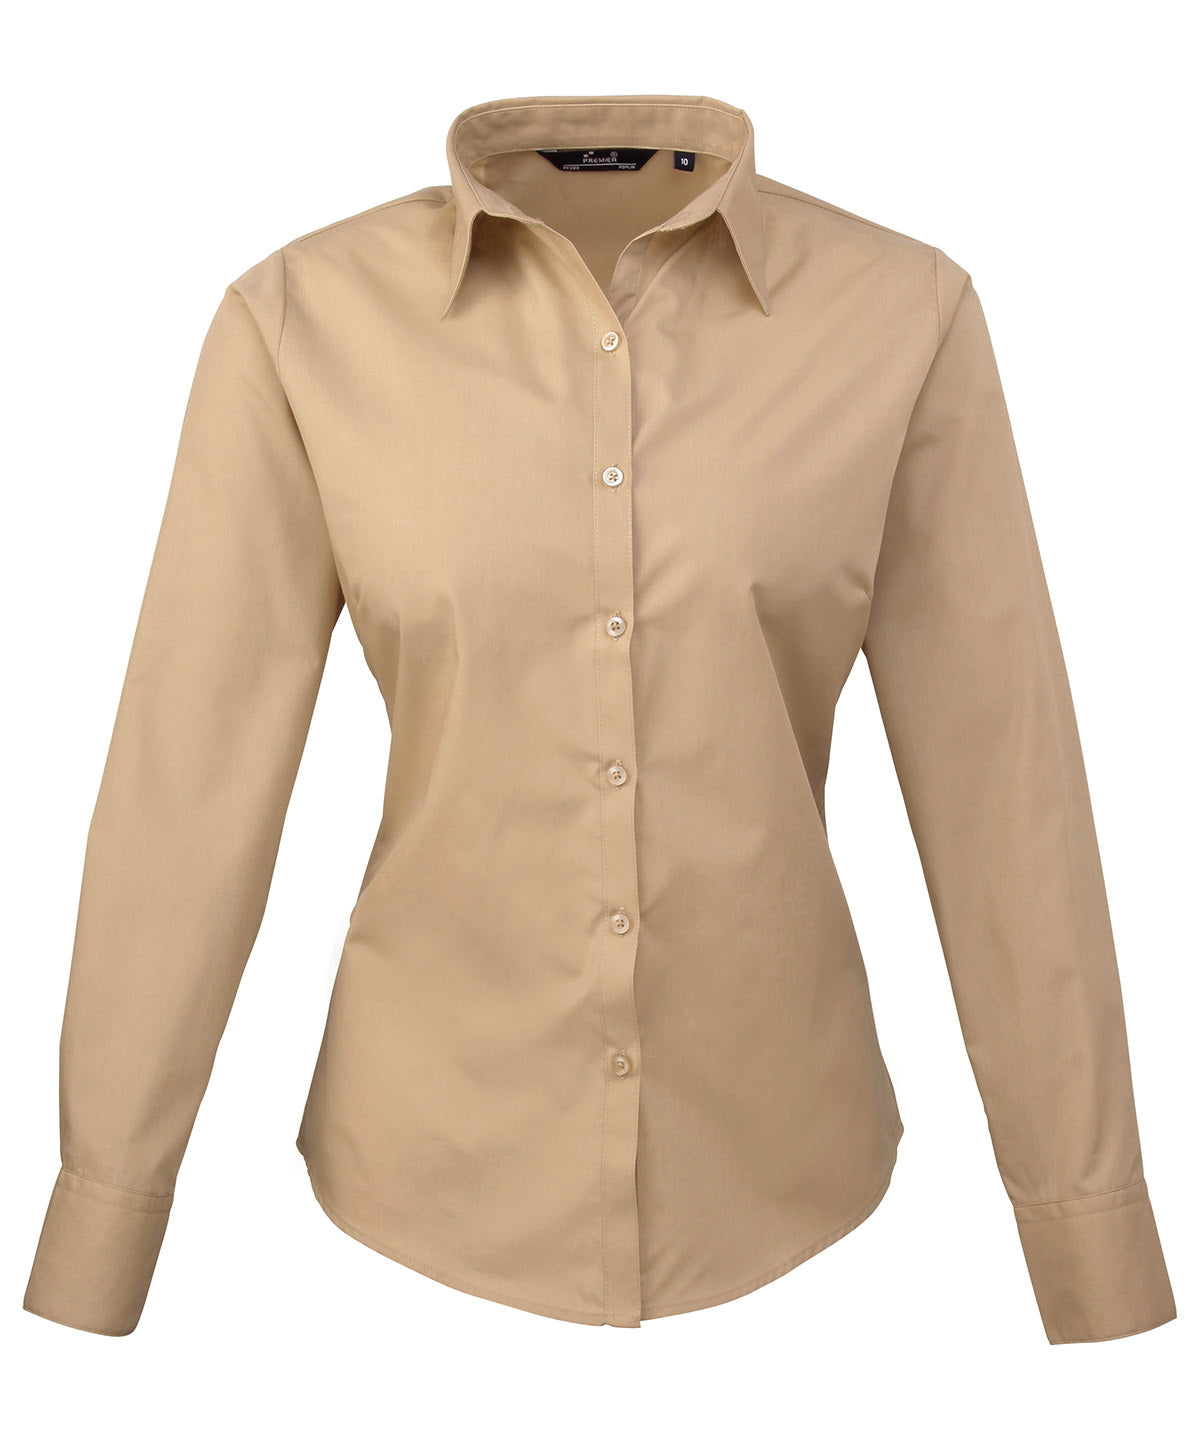 Premier Women's poplin long sleeve blouse Khaki